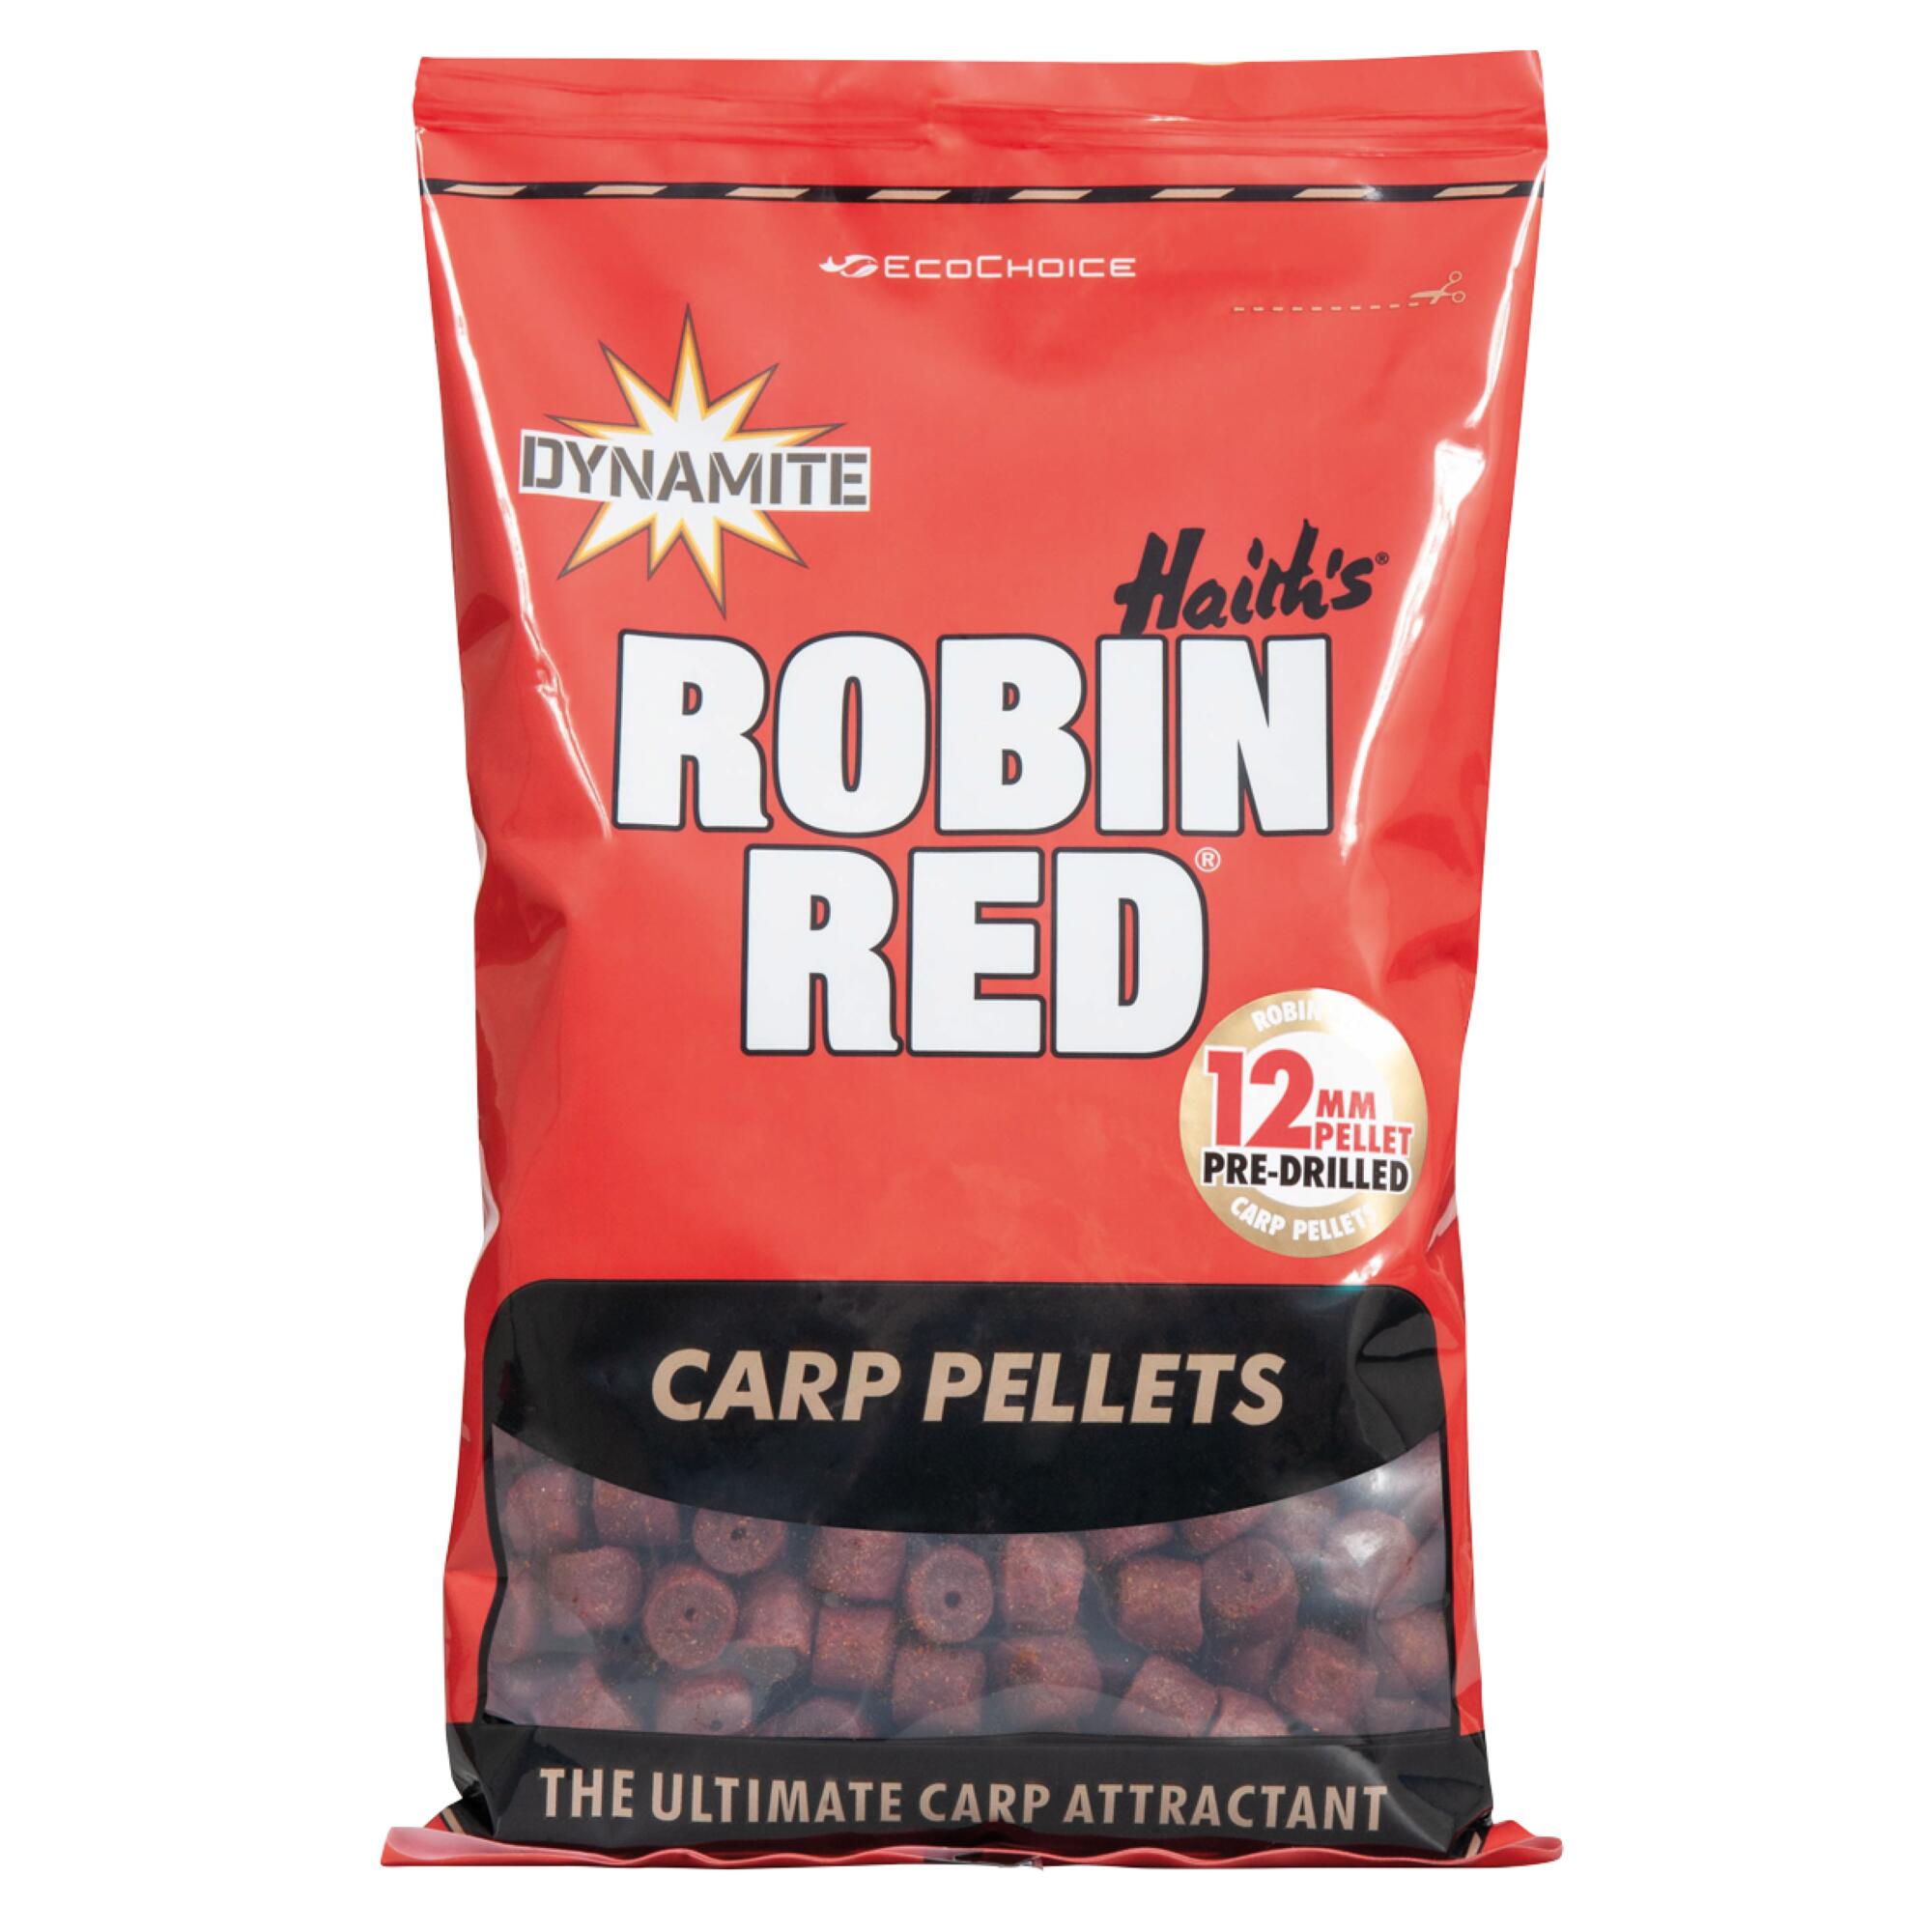 ROBIN RED CARP PELLETS 5/5